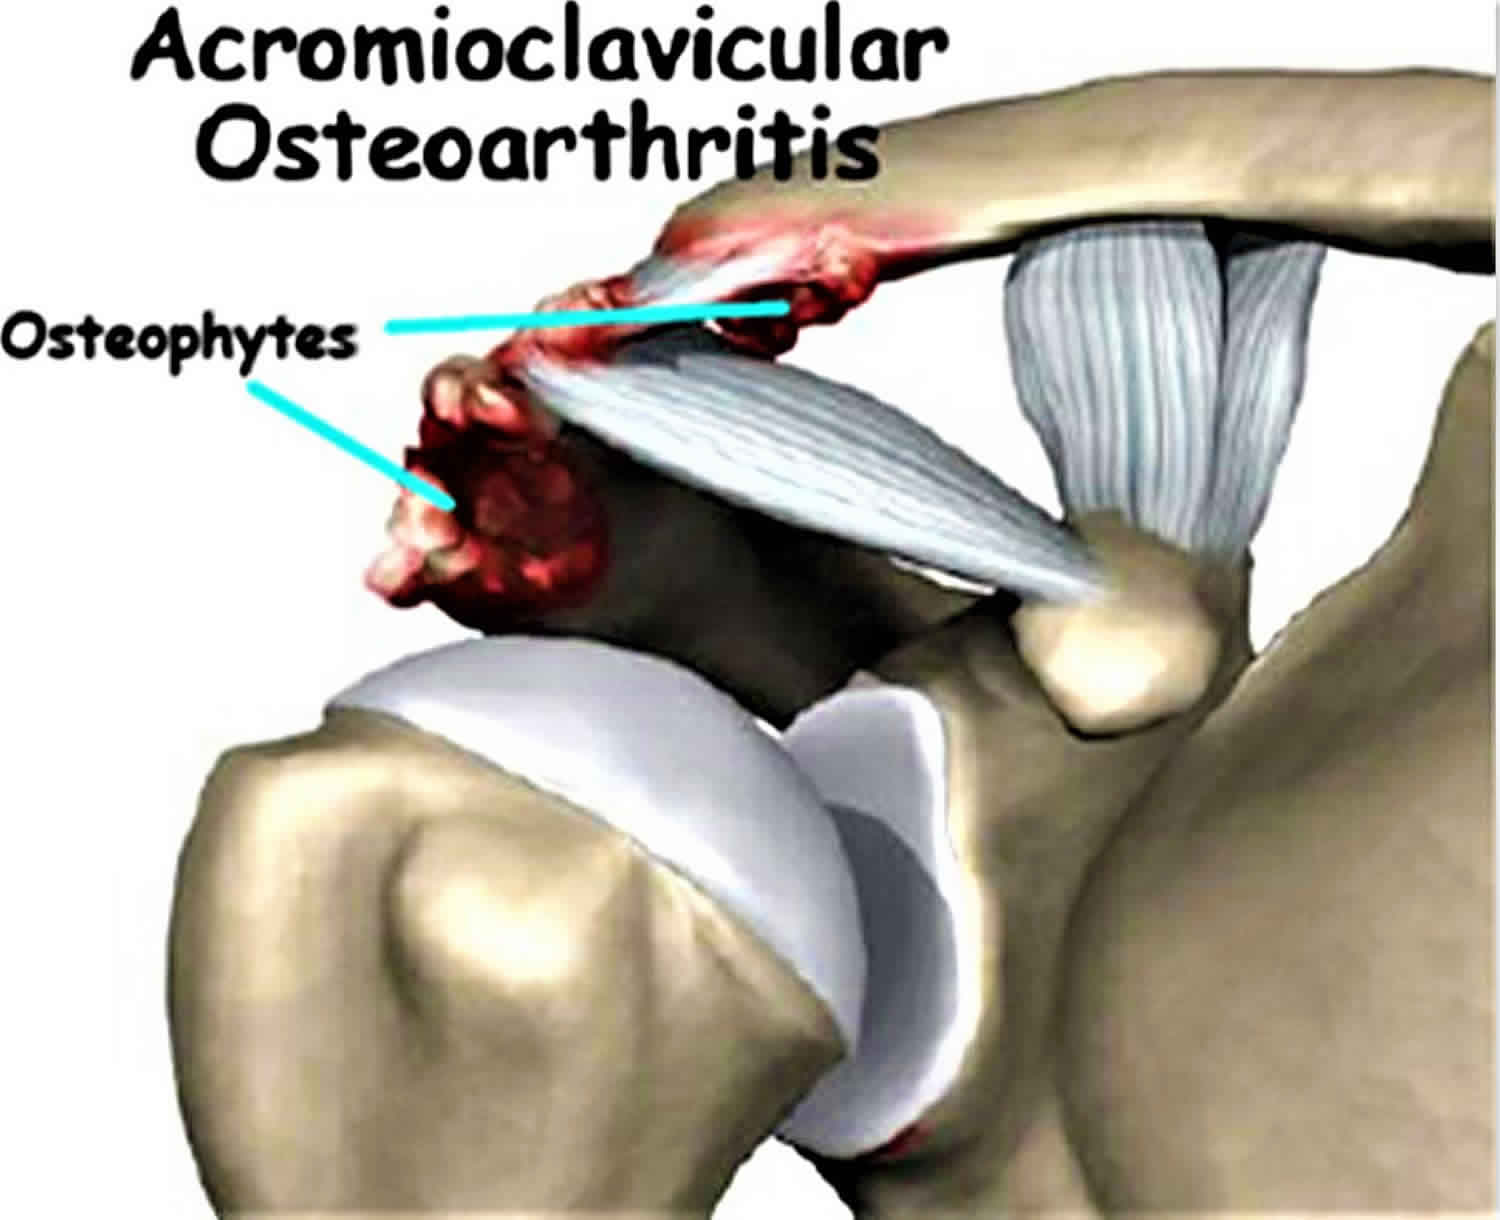 acromioclavicular joint osteoarthritis